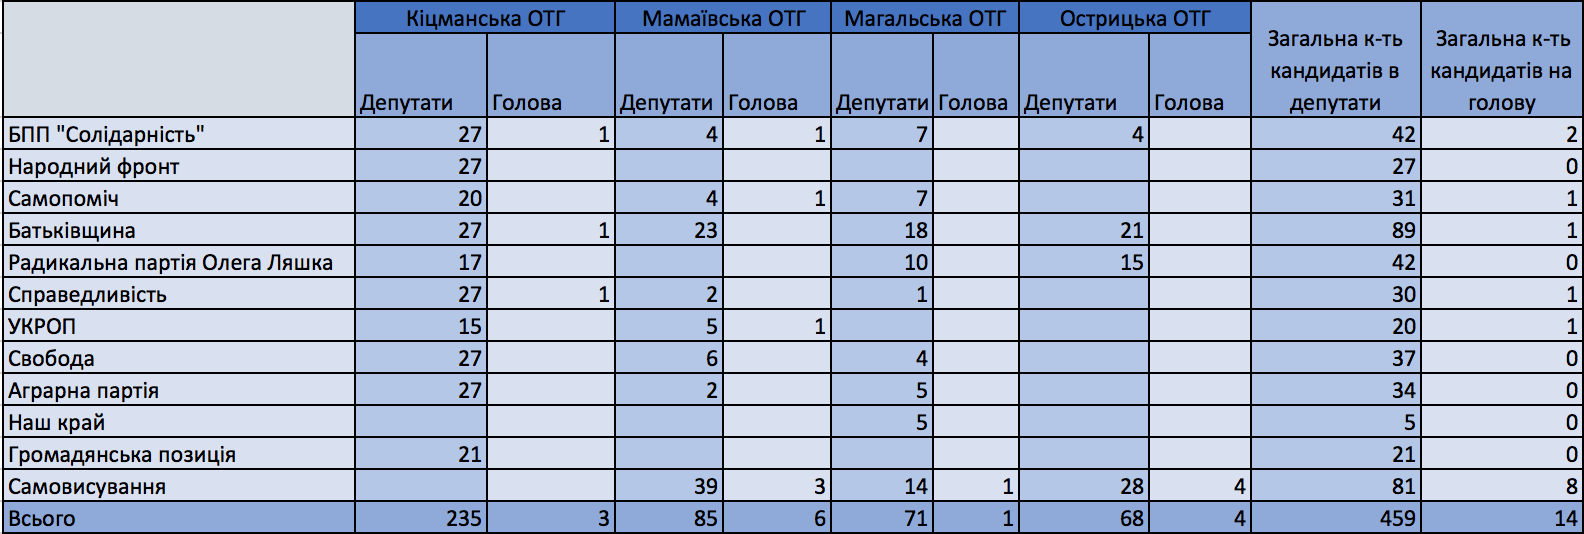 Чернівецька область: до перших виборів в ОТГ зареєстровано 459 кандидатів у депутати та 14 кандидатів на посаду голови громади